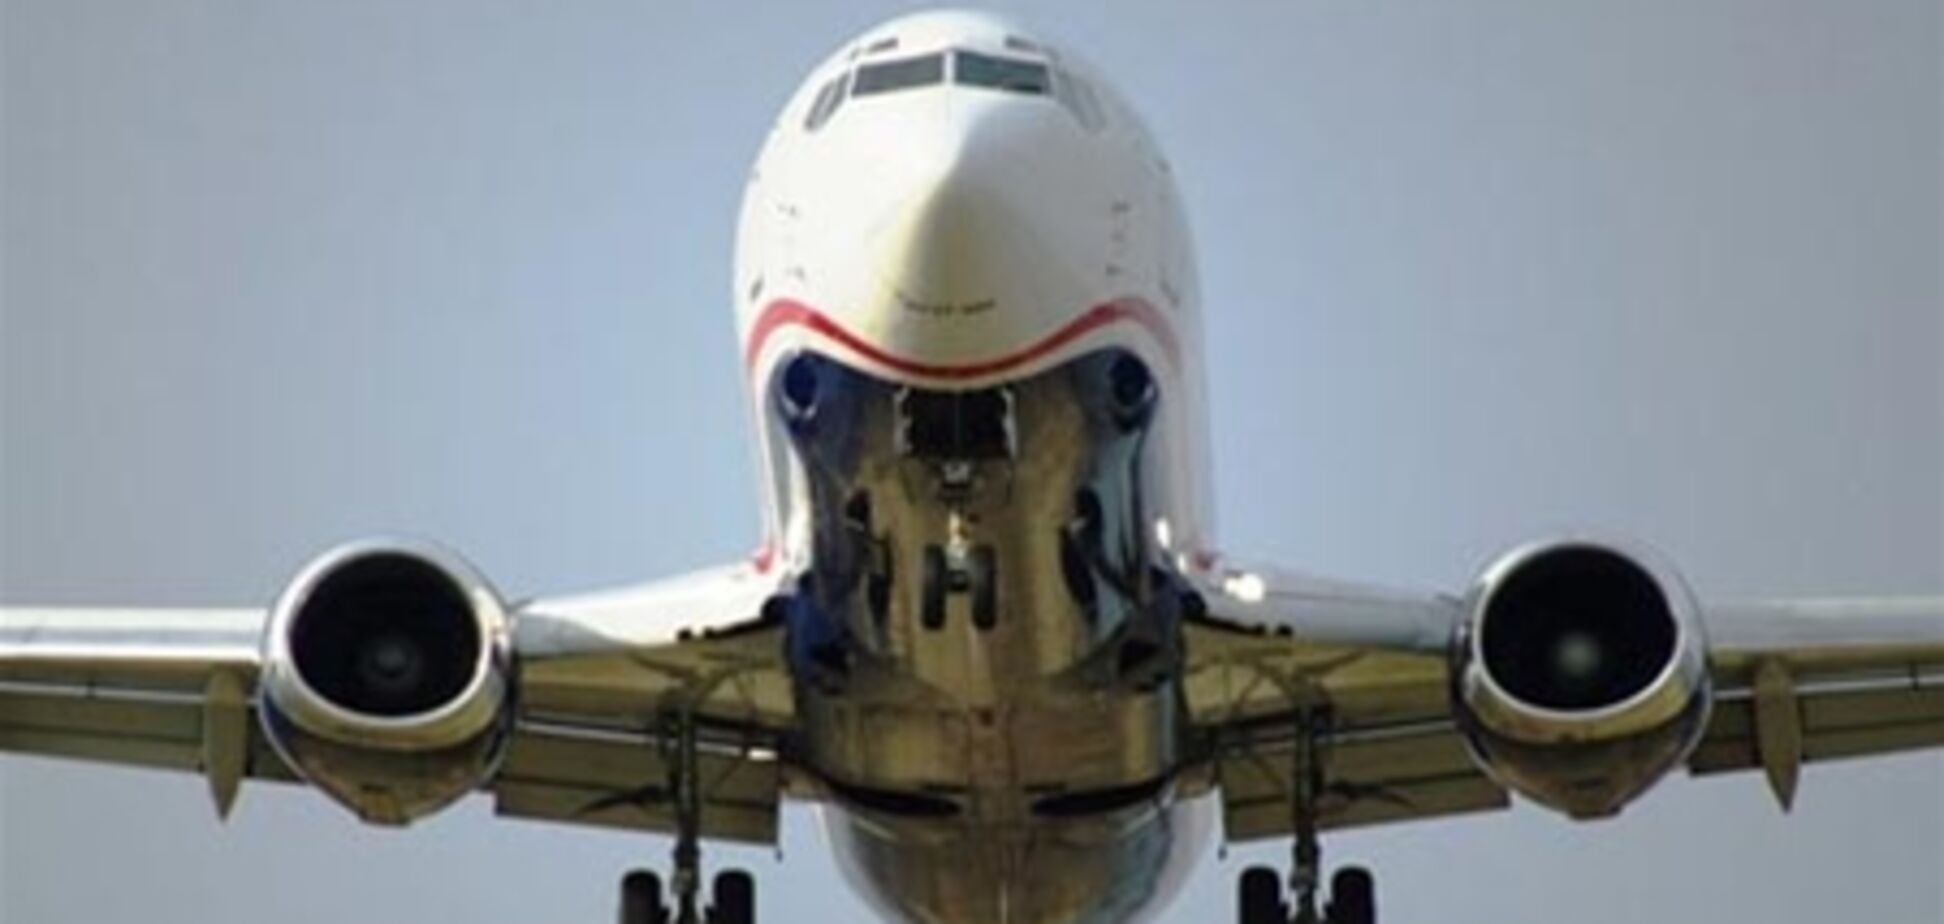 Американец попытался выйти из самолета прямо в небе - у него был 'тяжелый день матери'